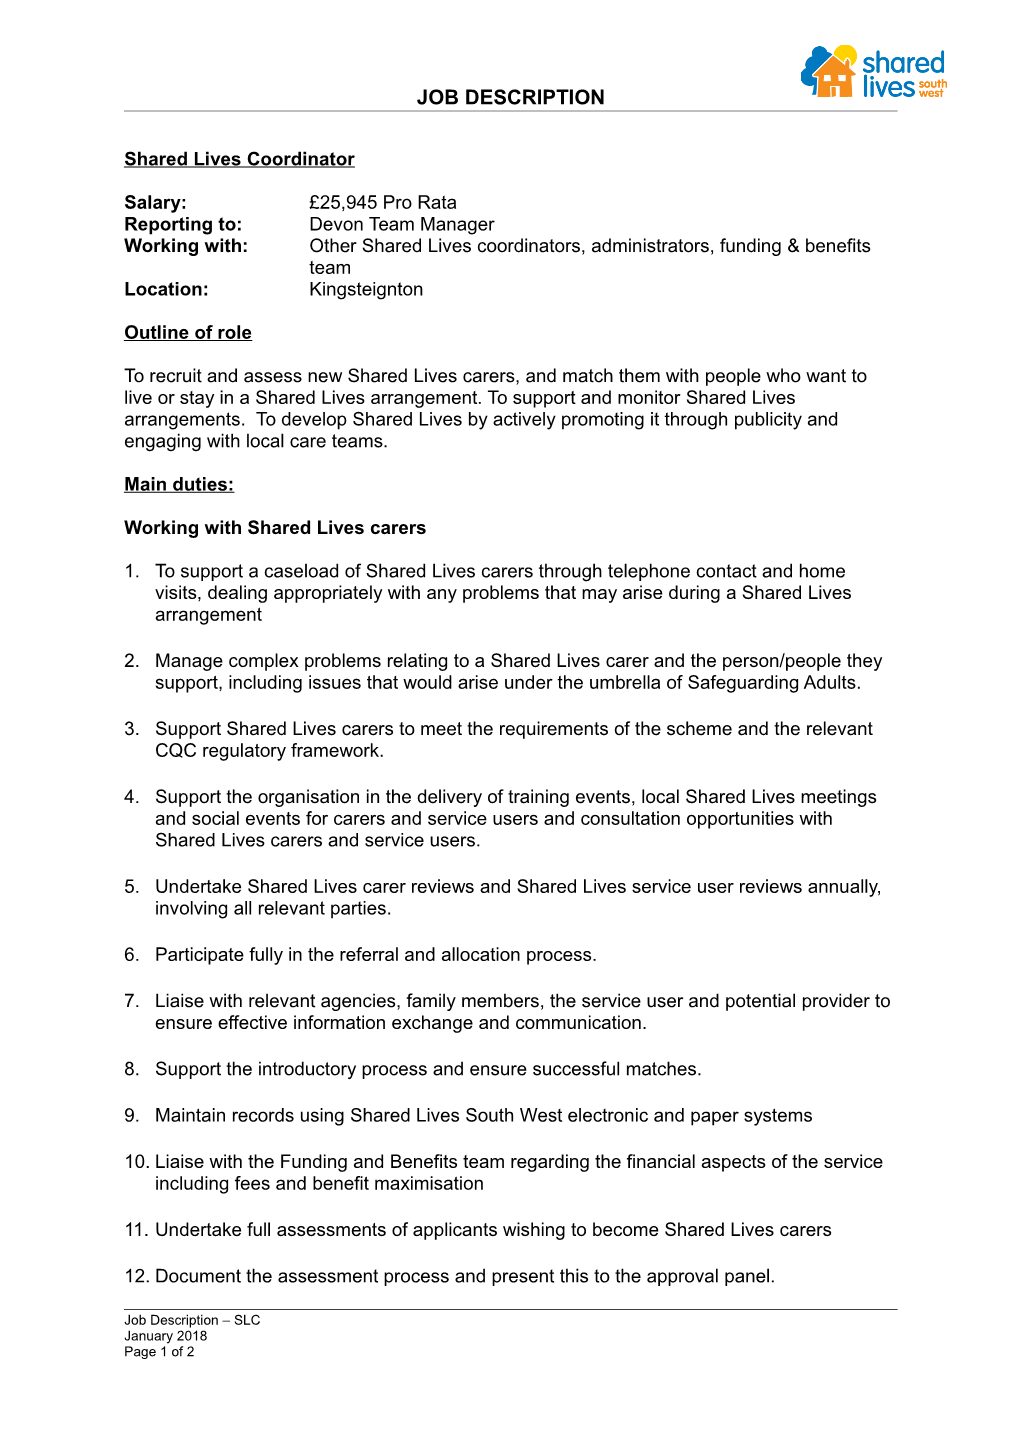 South West Adult Placement Scheme - Job Description